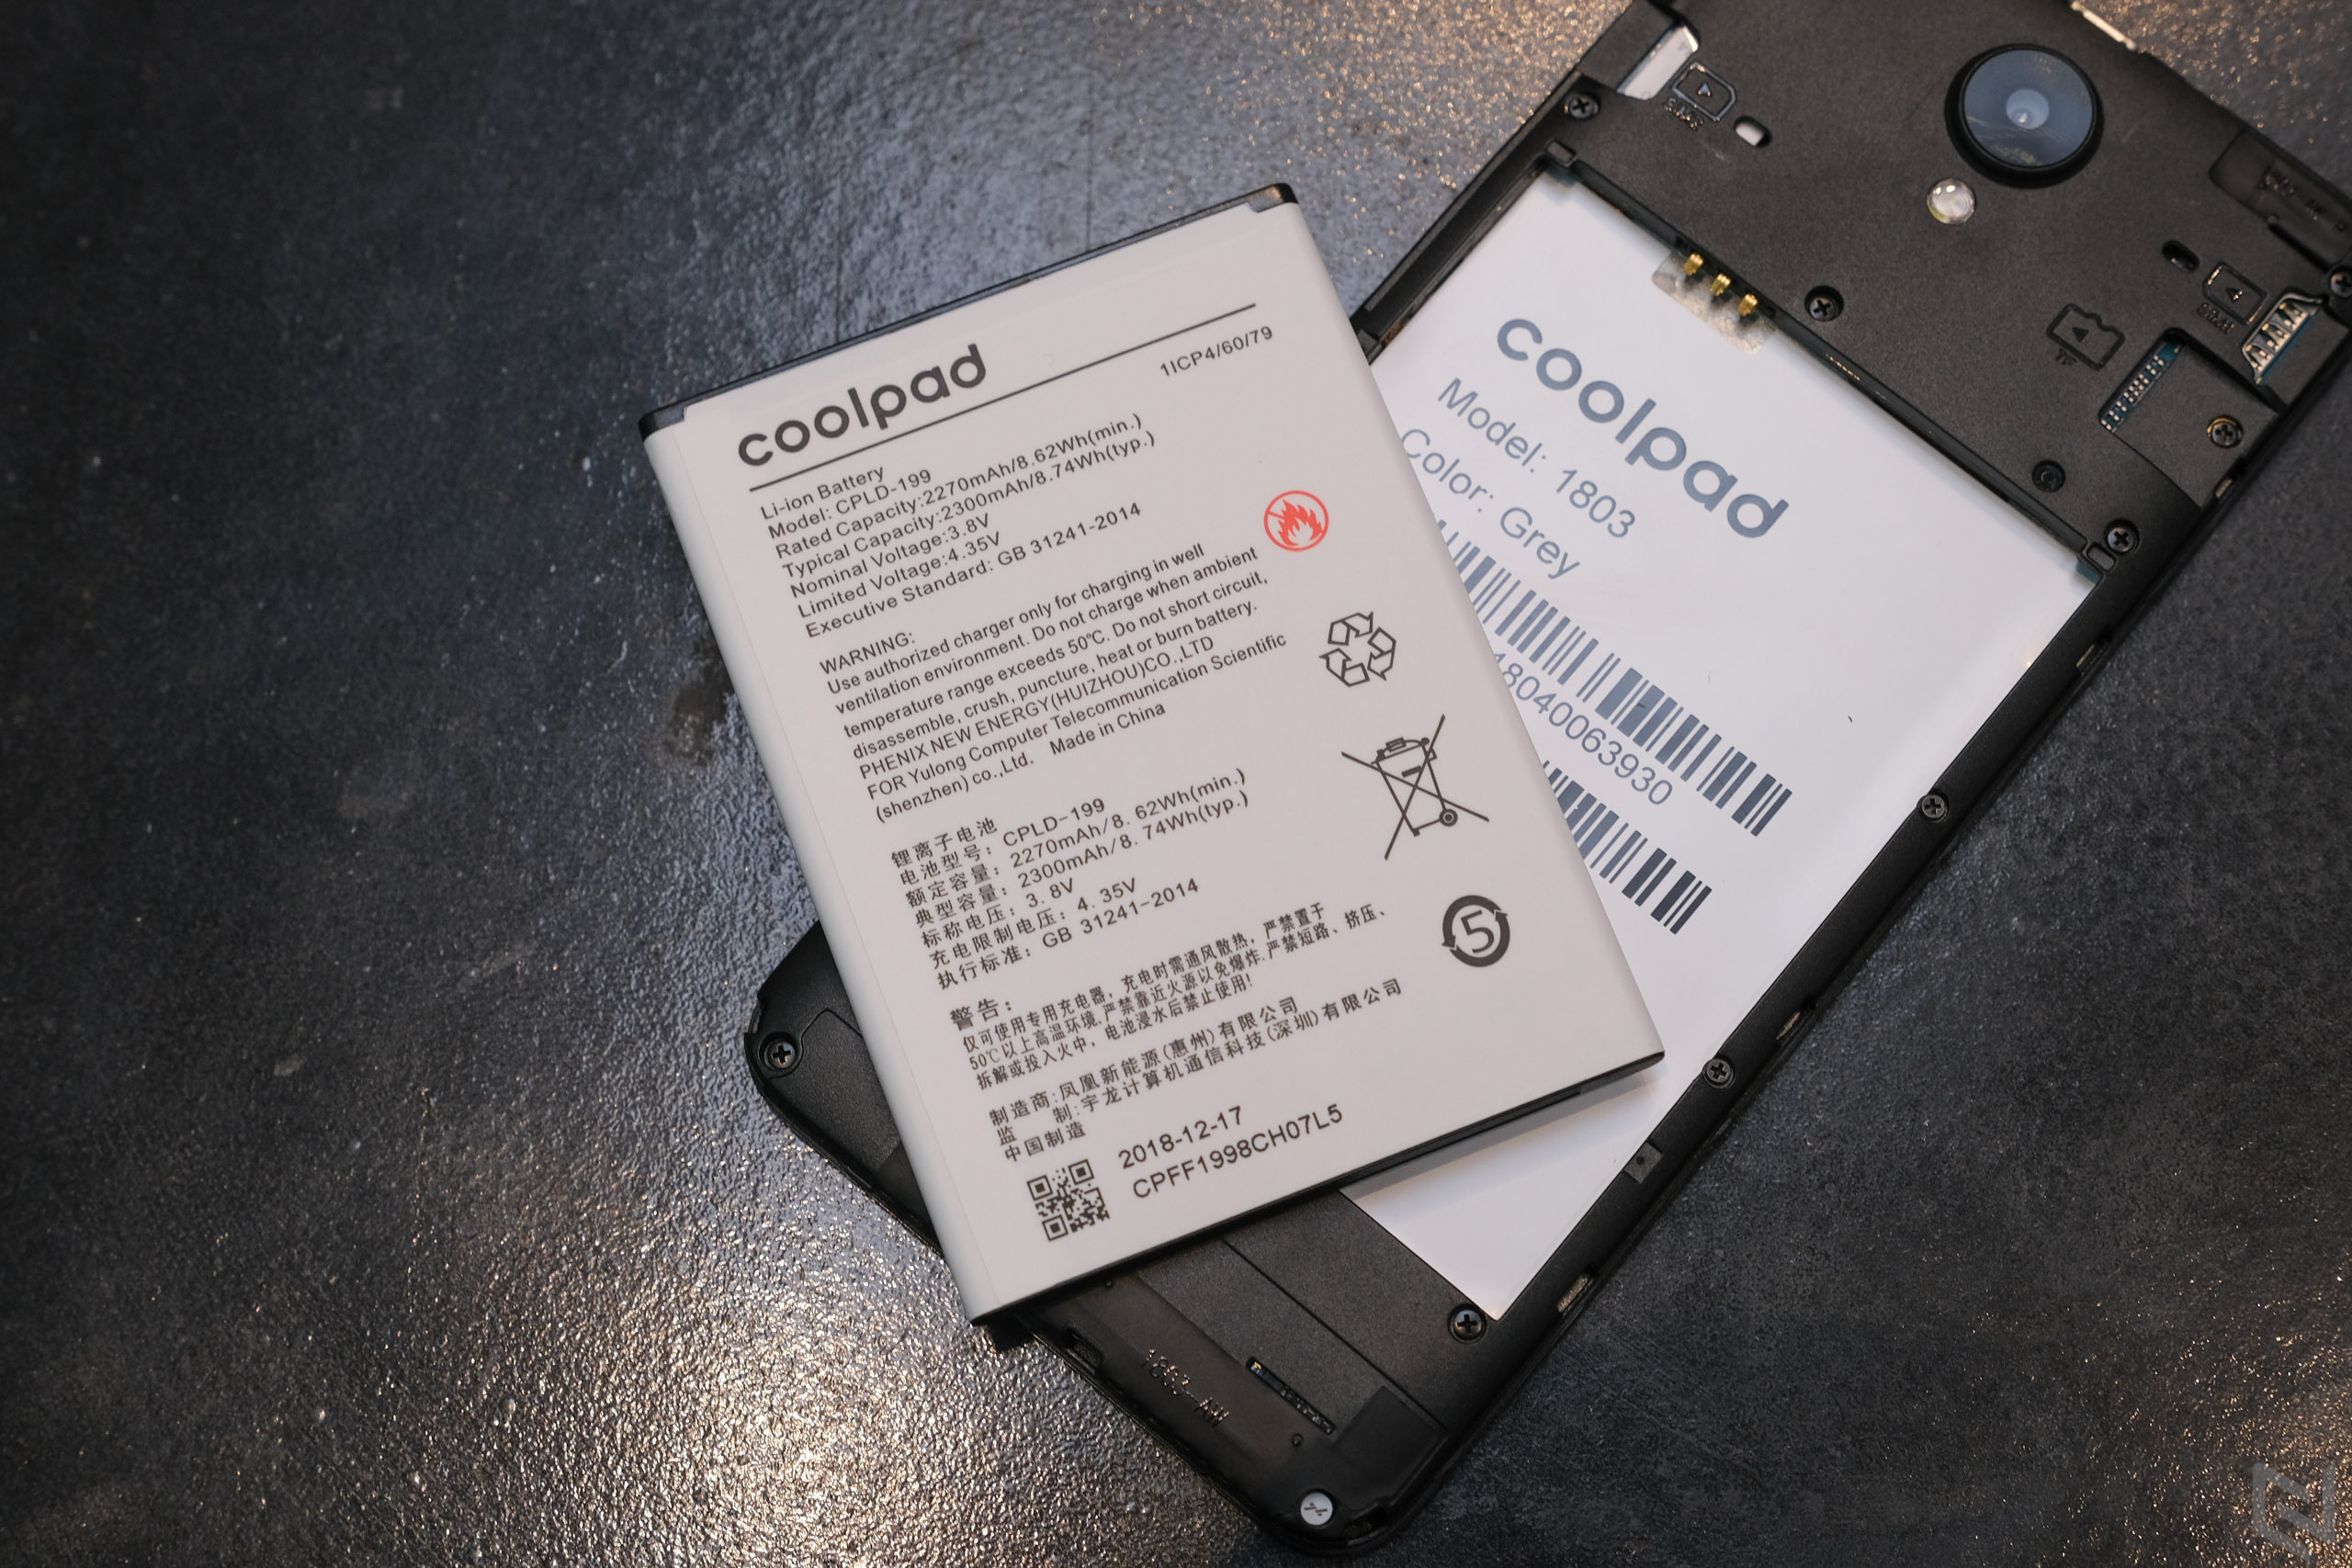 Đánh giá Coolpad N3C: 2 SIM 2 sóng 4G là sản phẩm đáng mua trong dịp tết?